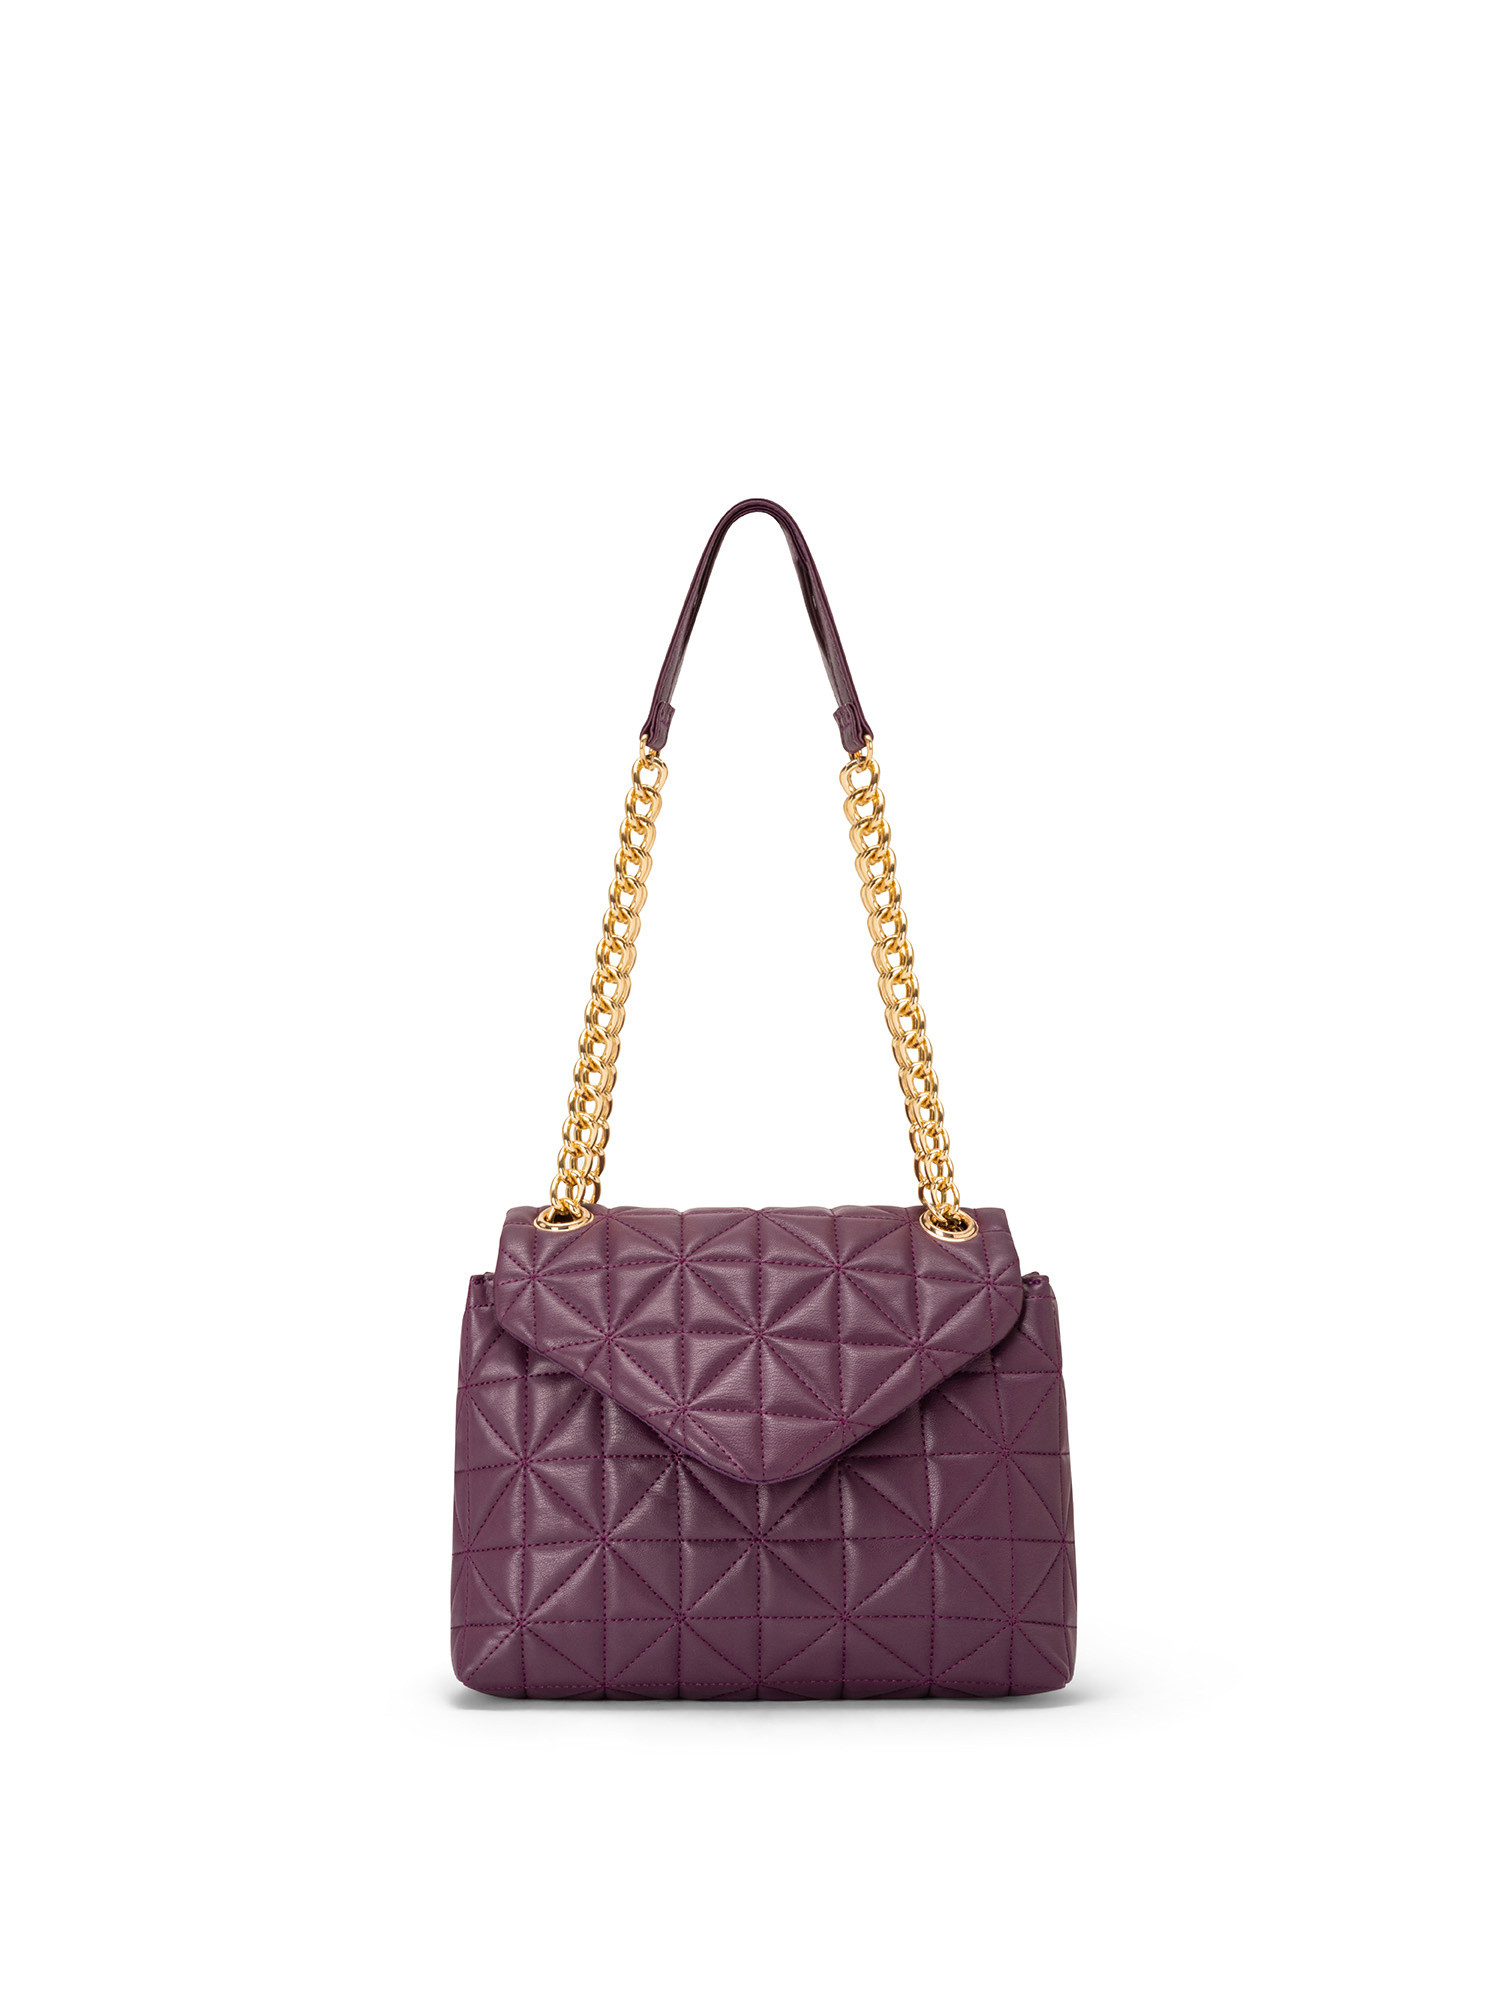 Koan - Shoulder bag with motif, Purple, large image number 0